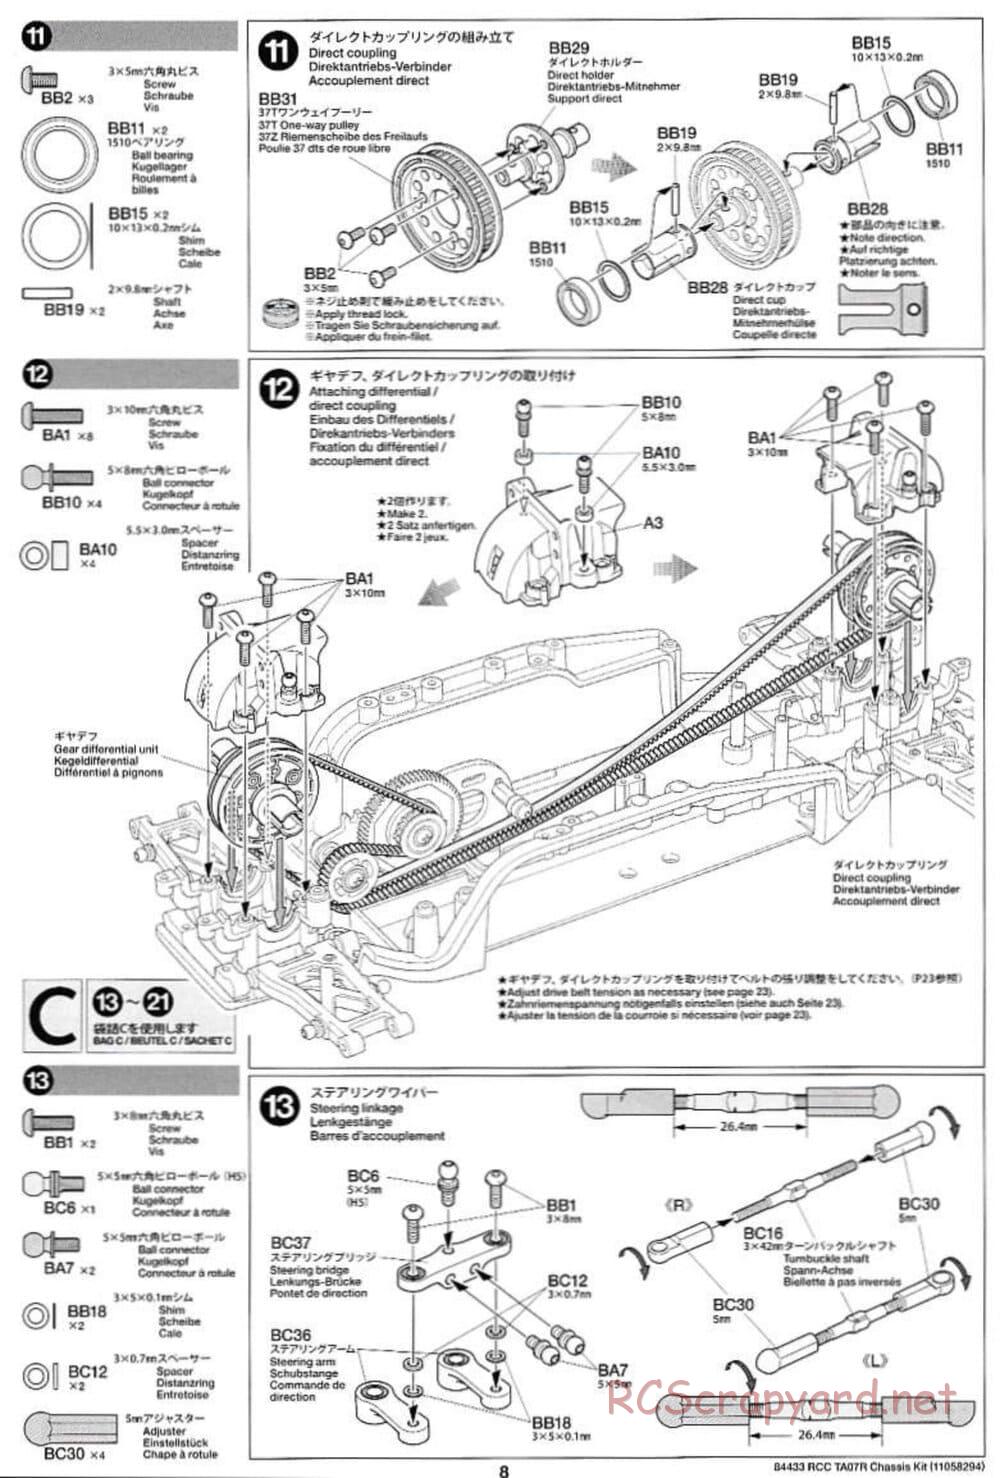 Tamiya - TA07 R Chassis - Manual - Page 8